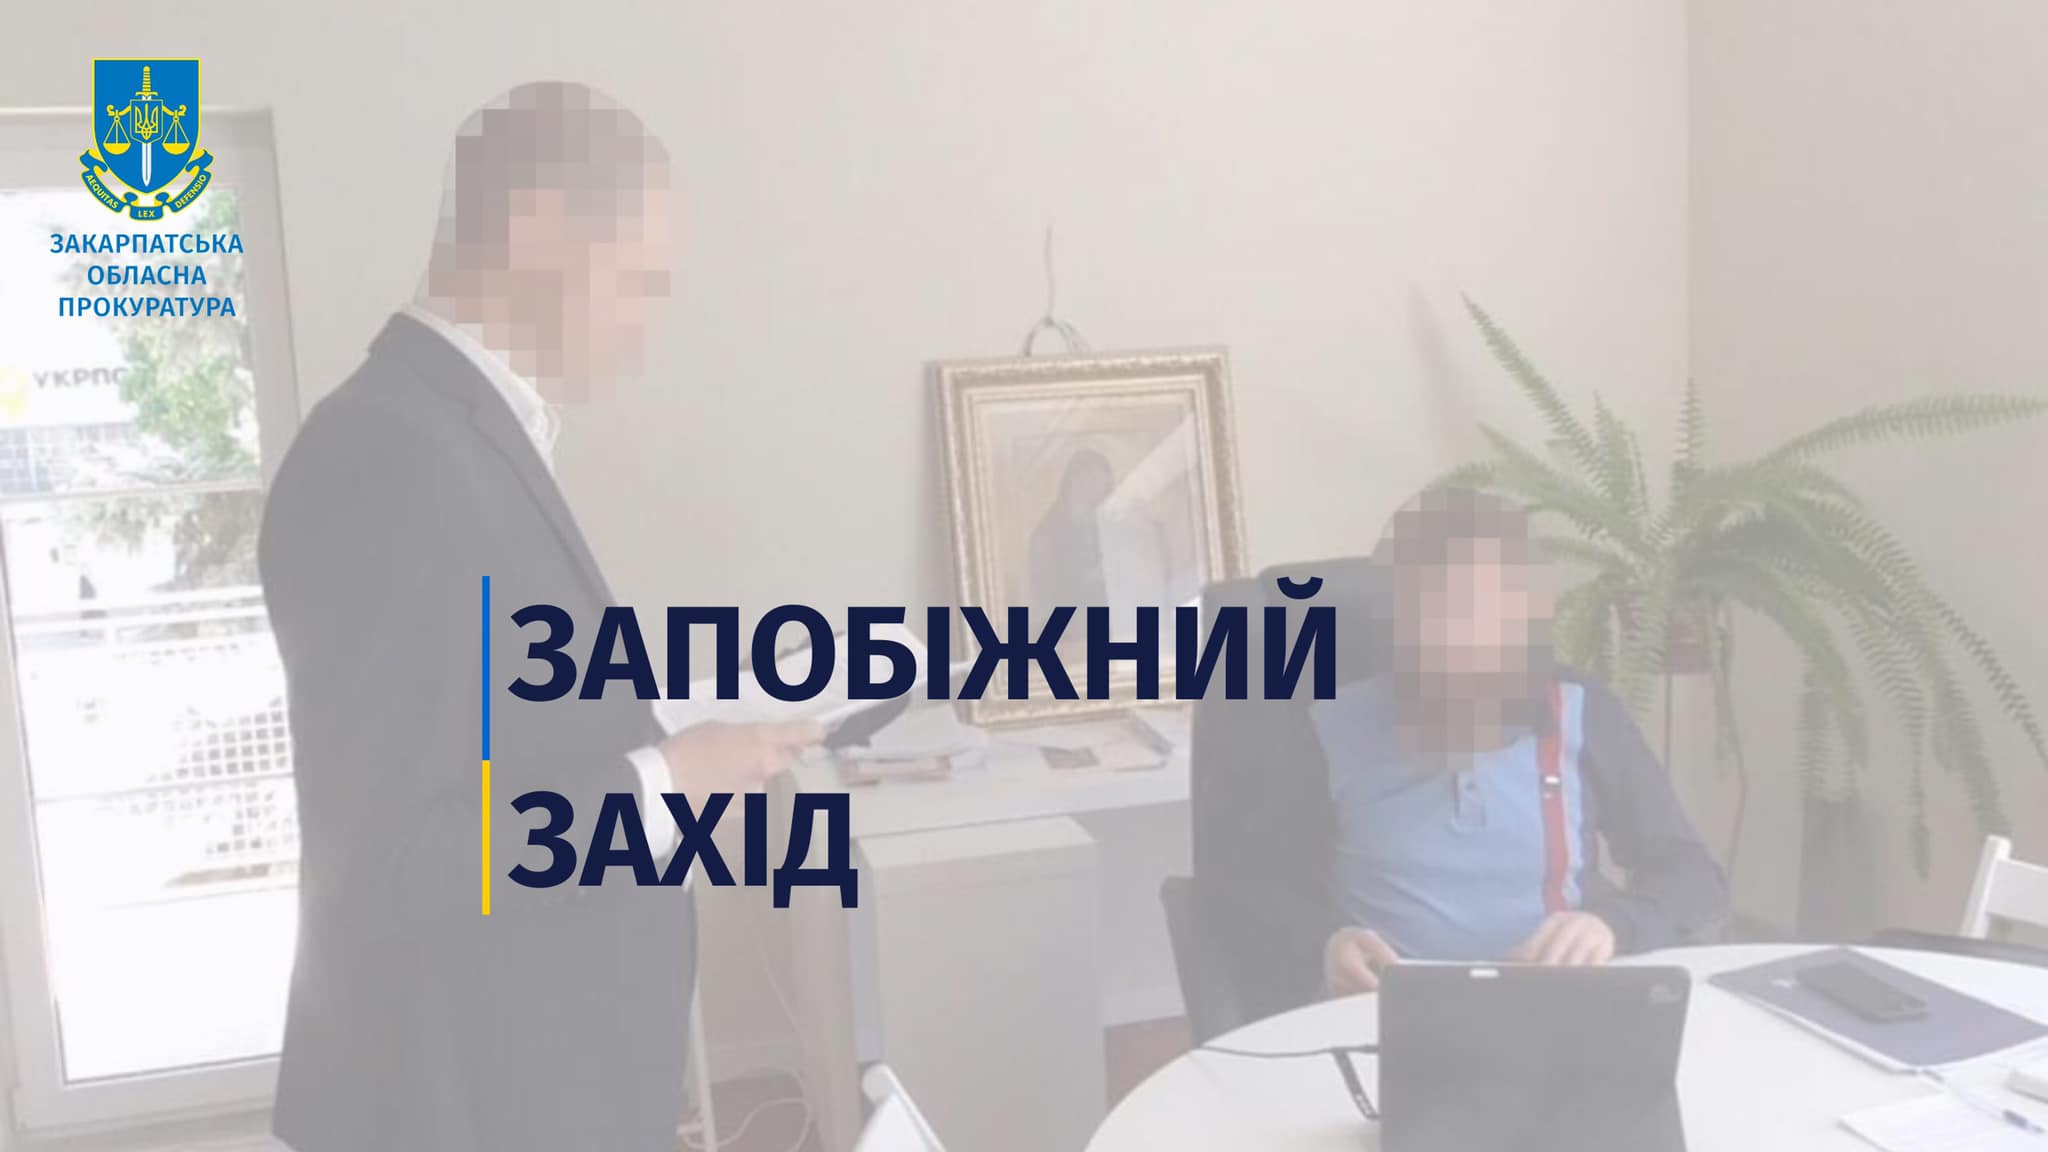 Начальника одного з управлінь Ужгородської міськради, підозрюваного у фальсифікації документів, відсторонили від посади та обрали запобіжний захід.